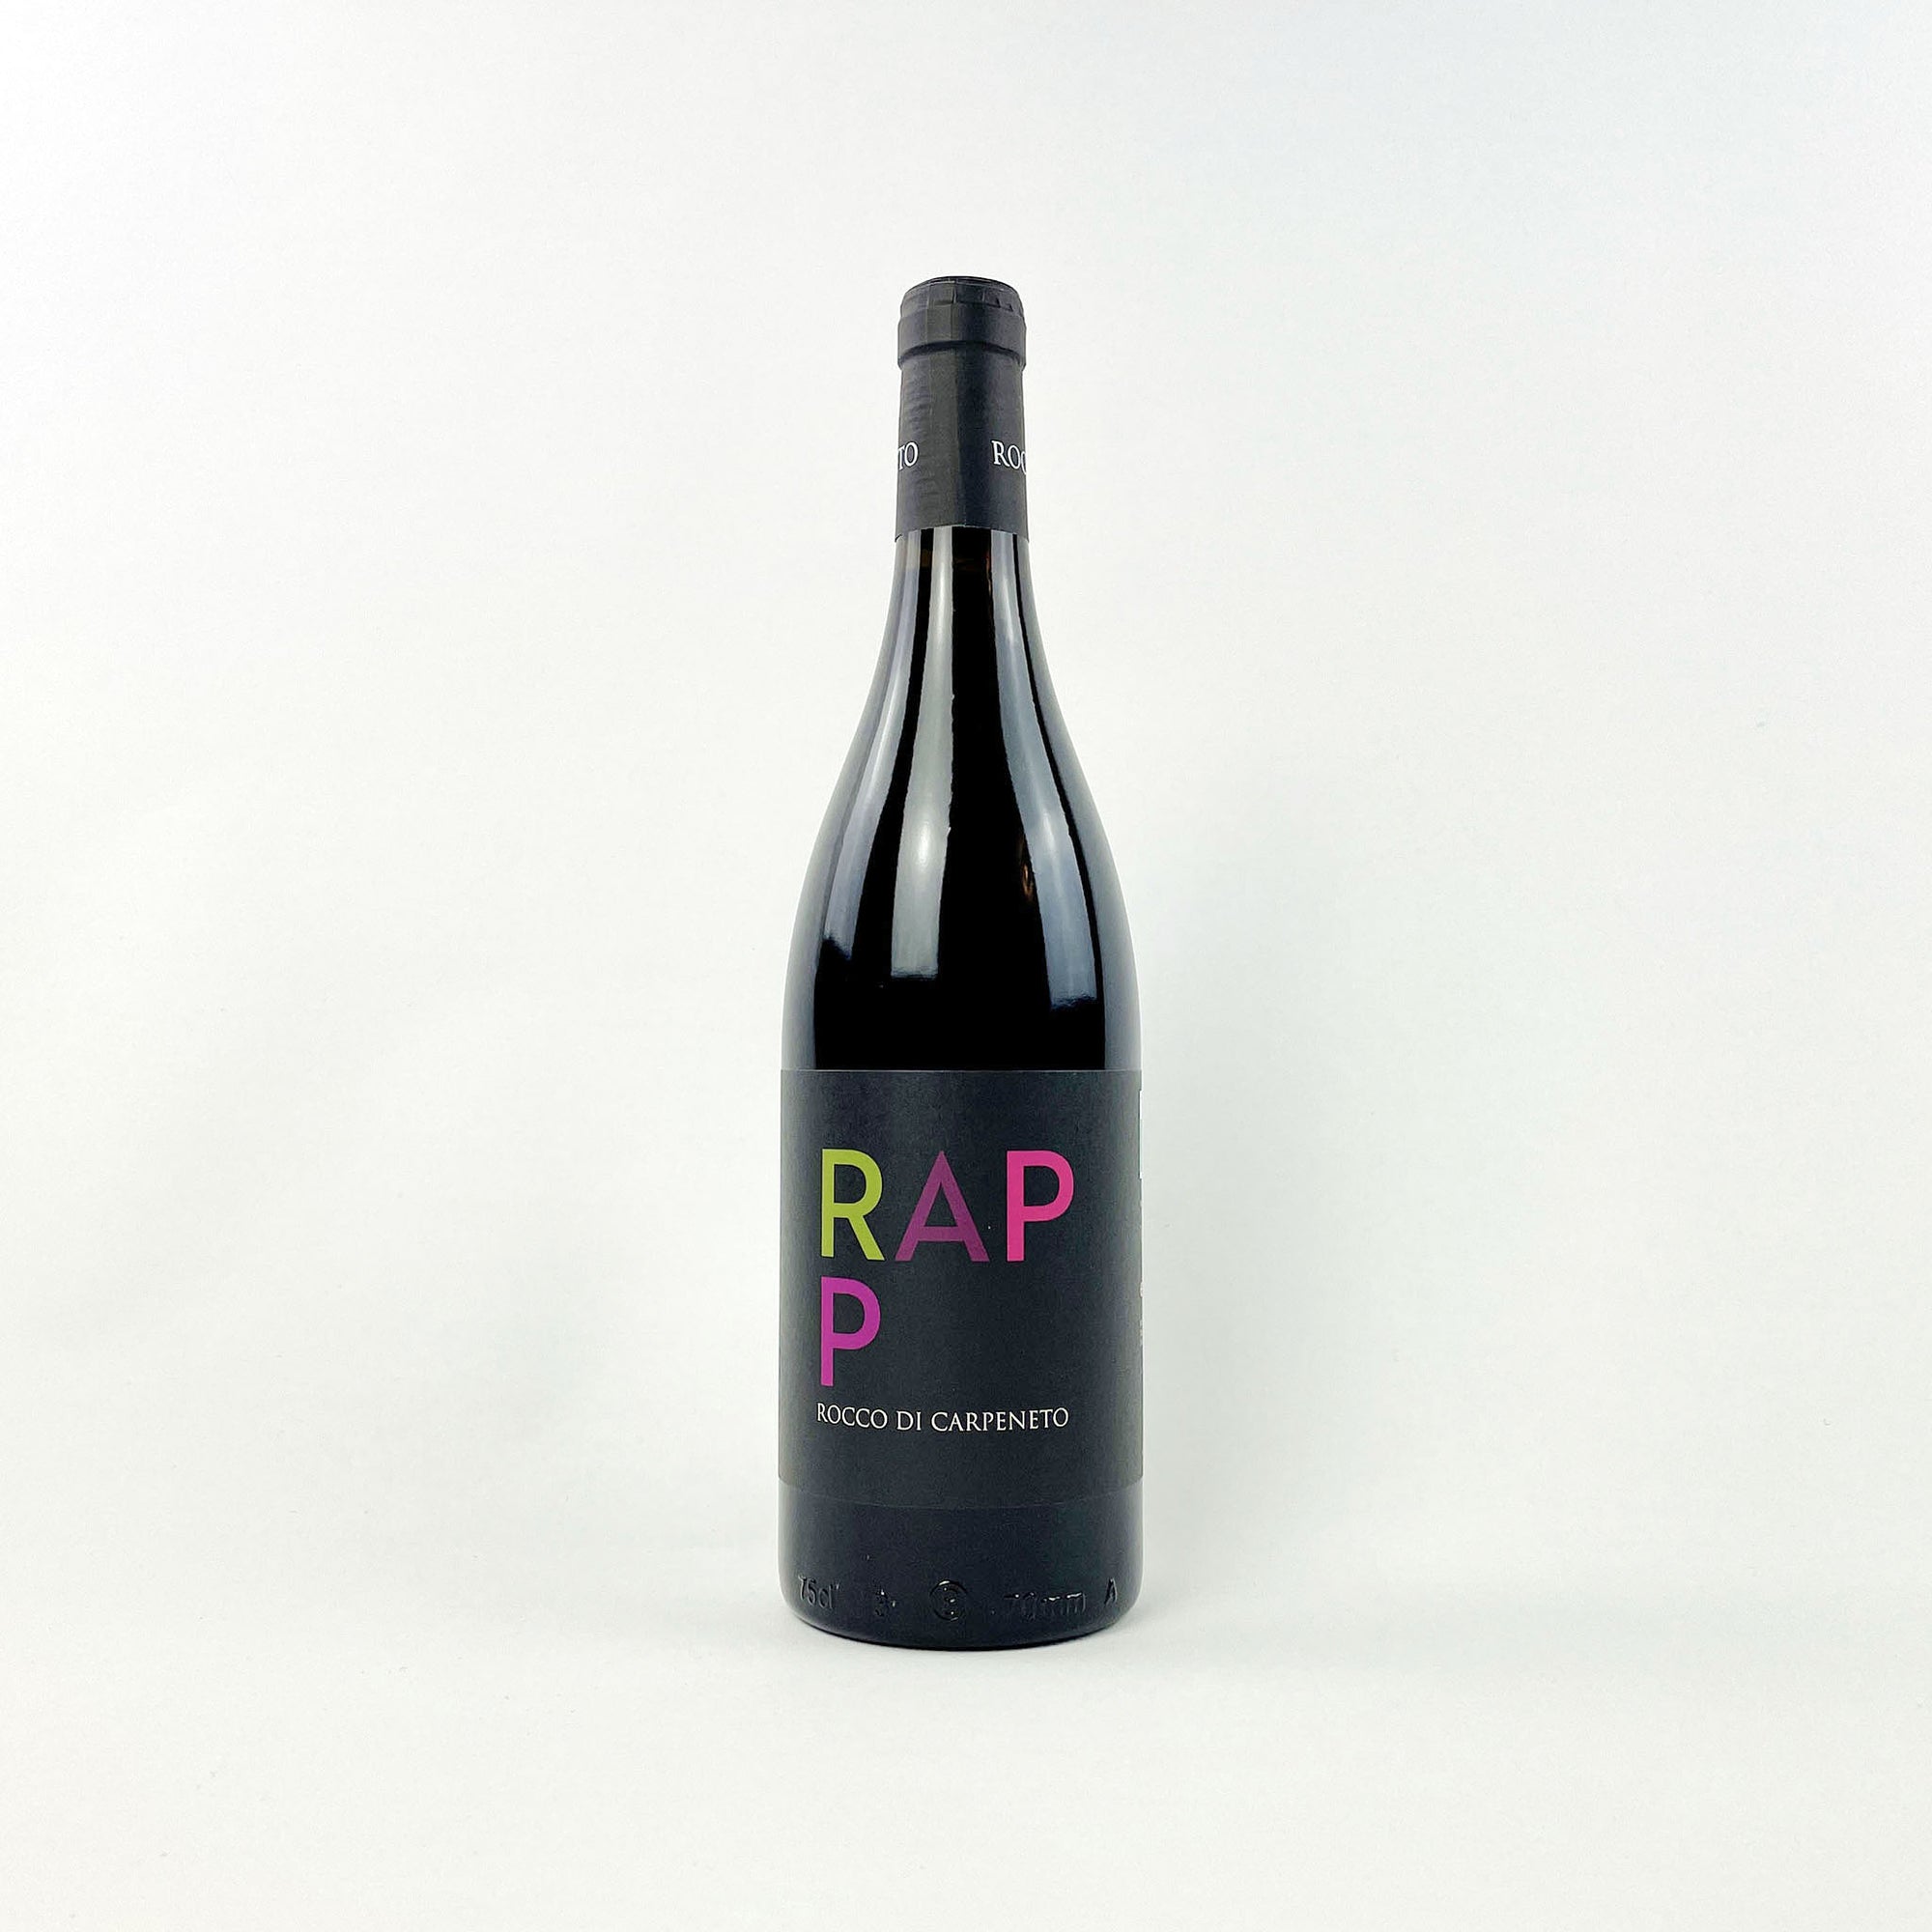 Rocco Di Carpeneto Rapp 2018 natural red wine bottle front view